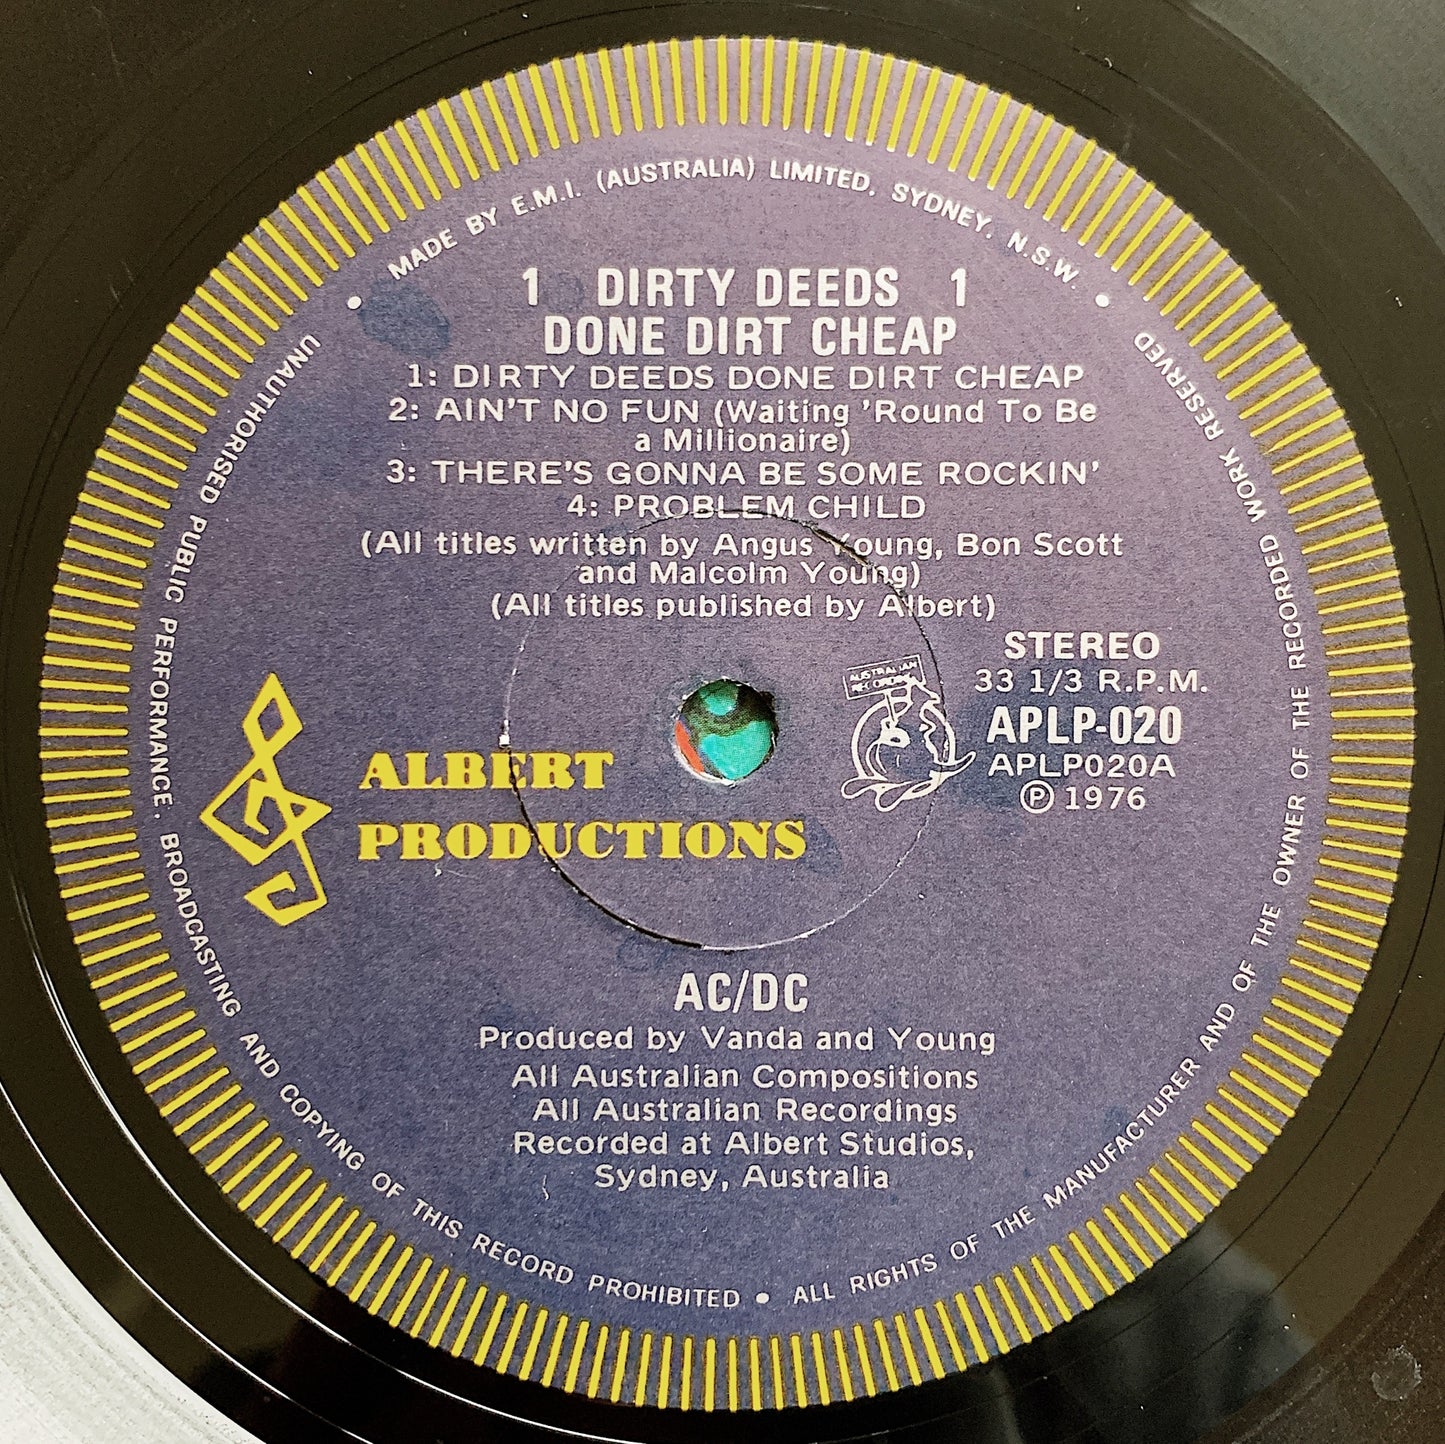 AC/DC / Dirty Deeds Done Dirt Cheap LP